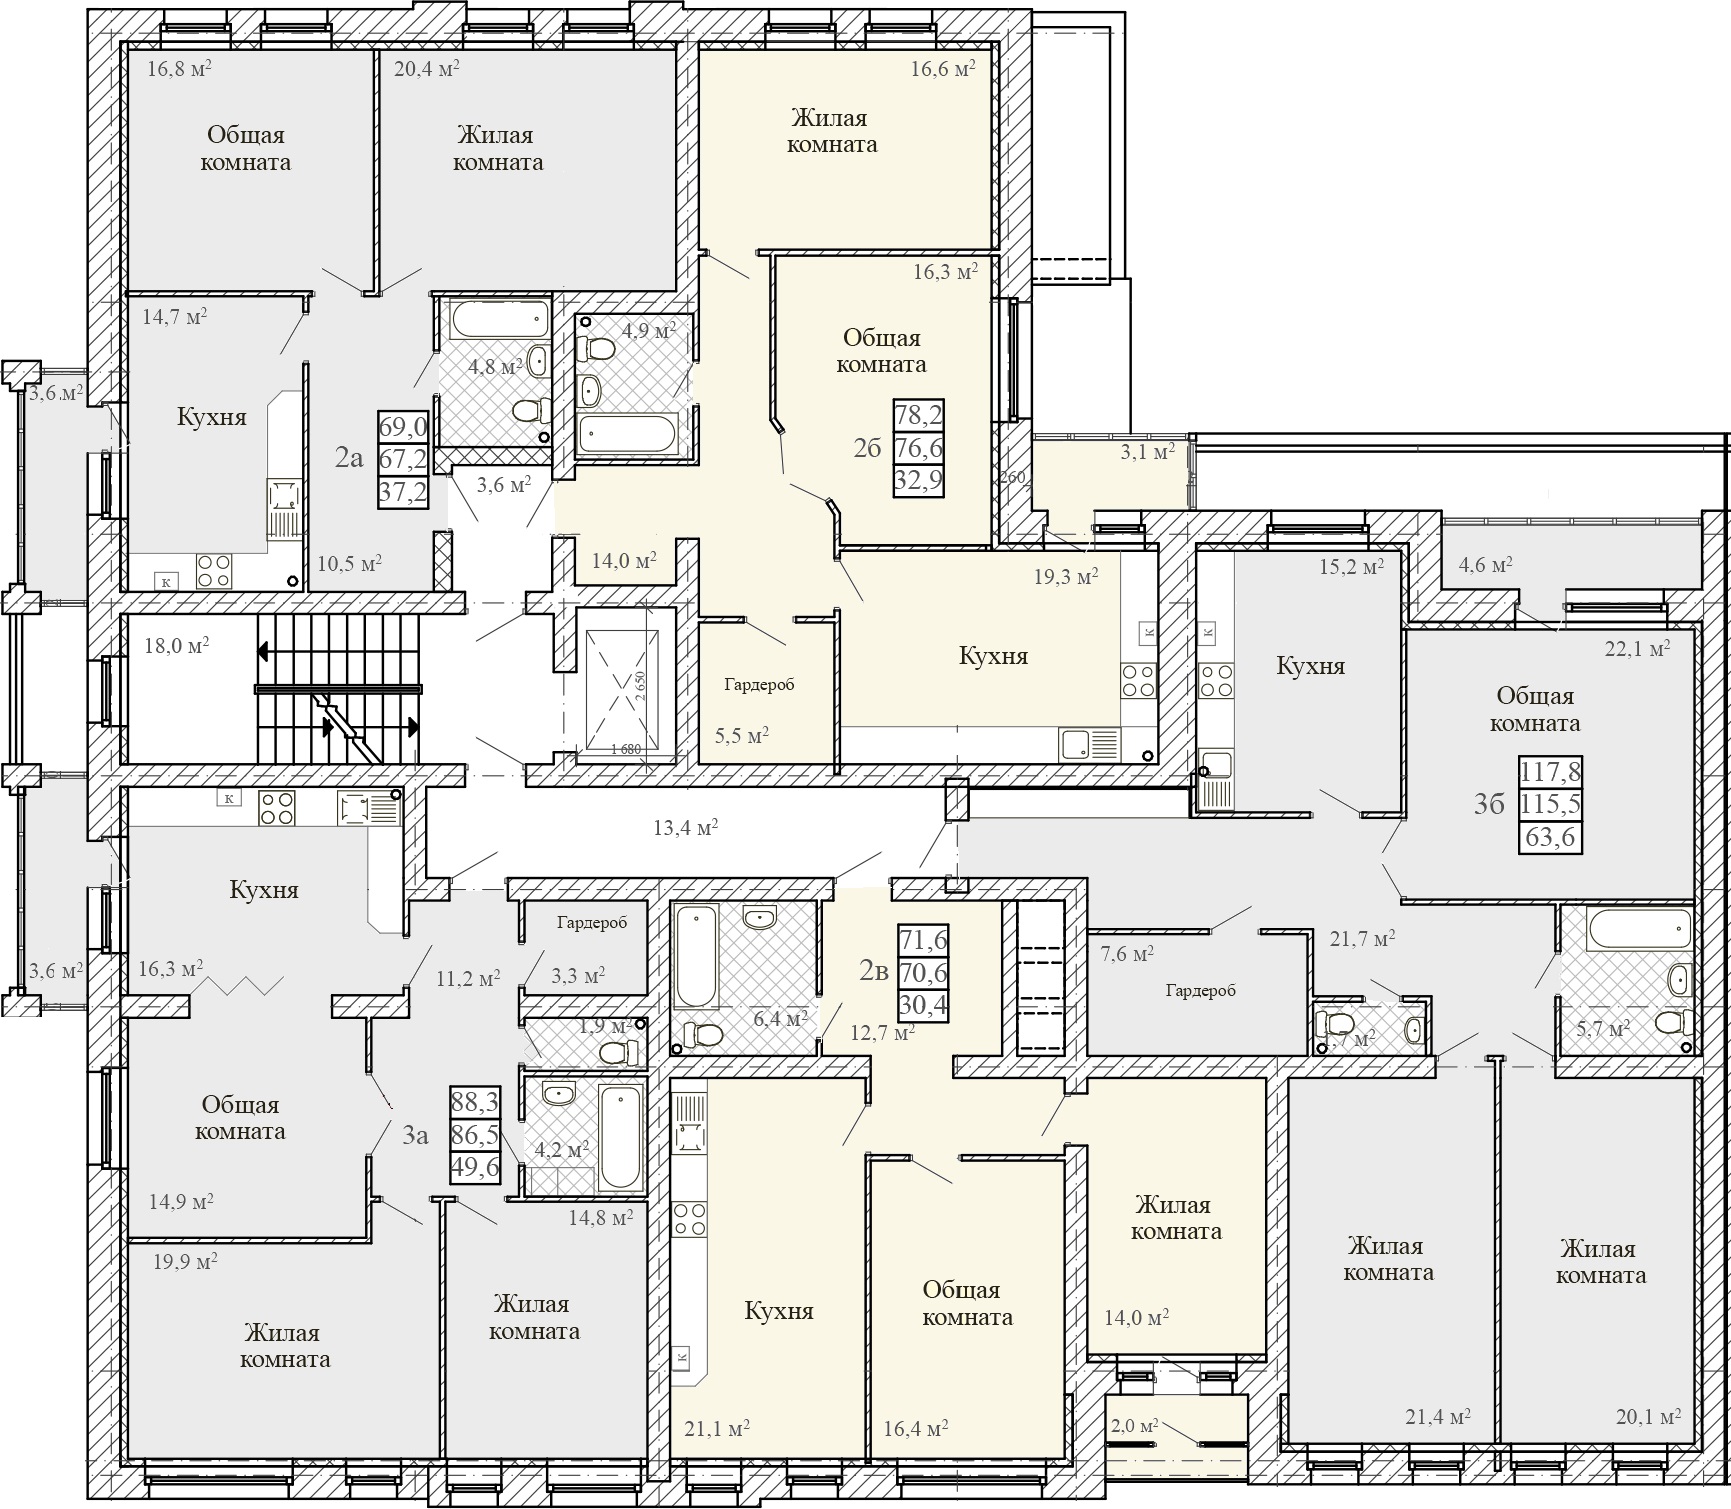 4 подъездный дом. 4 Квартиры на этаже планировка. Планировка квартир в подъезде. Схема подъезда жилого дома. Секционный 2 квартирный дом.